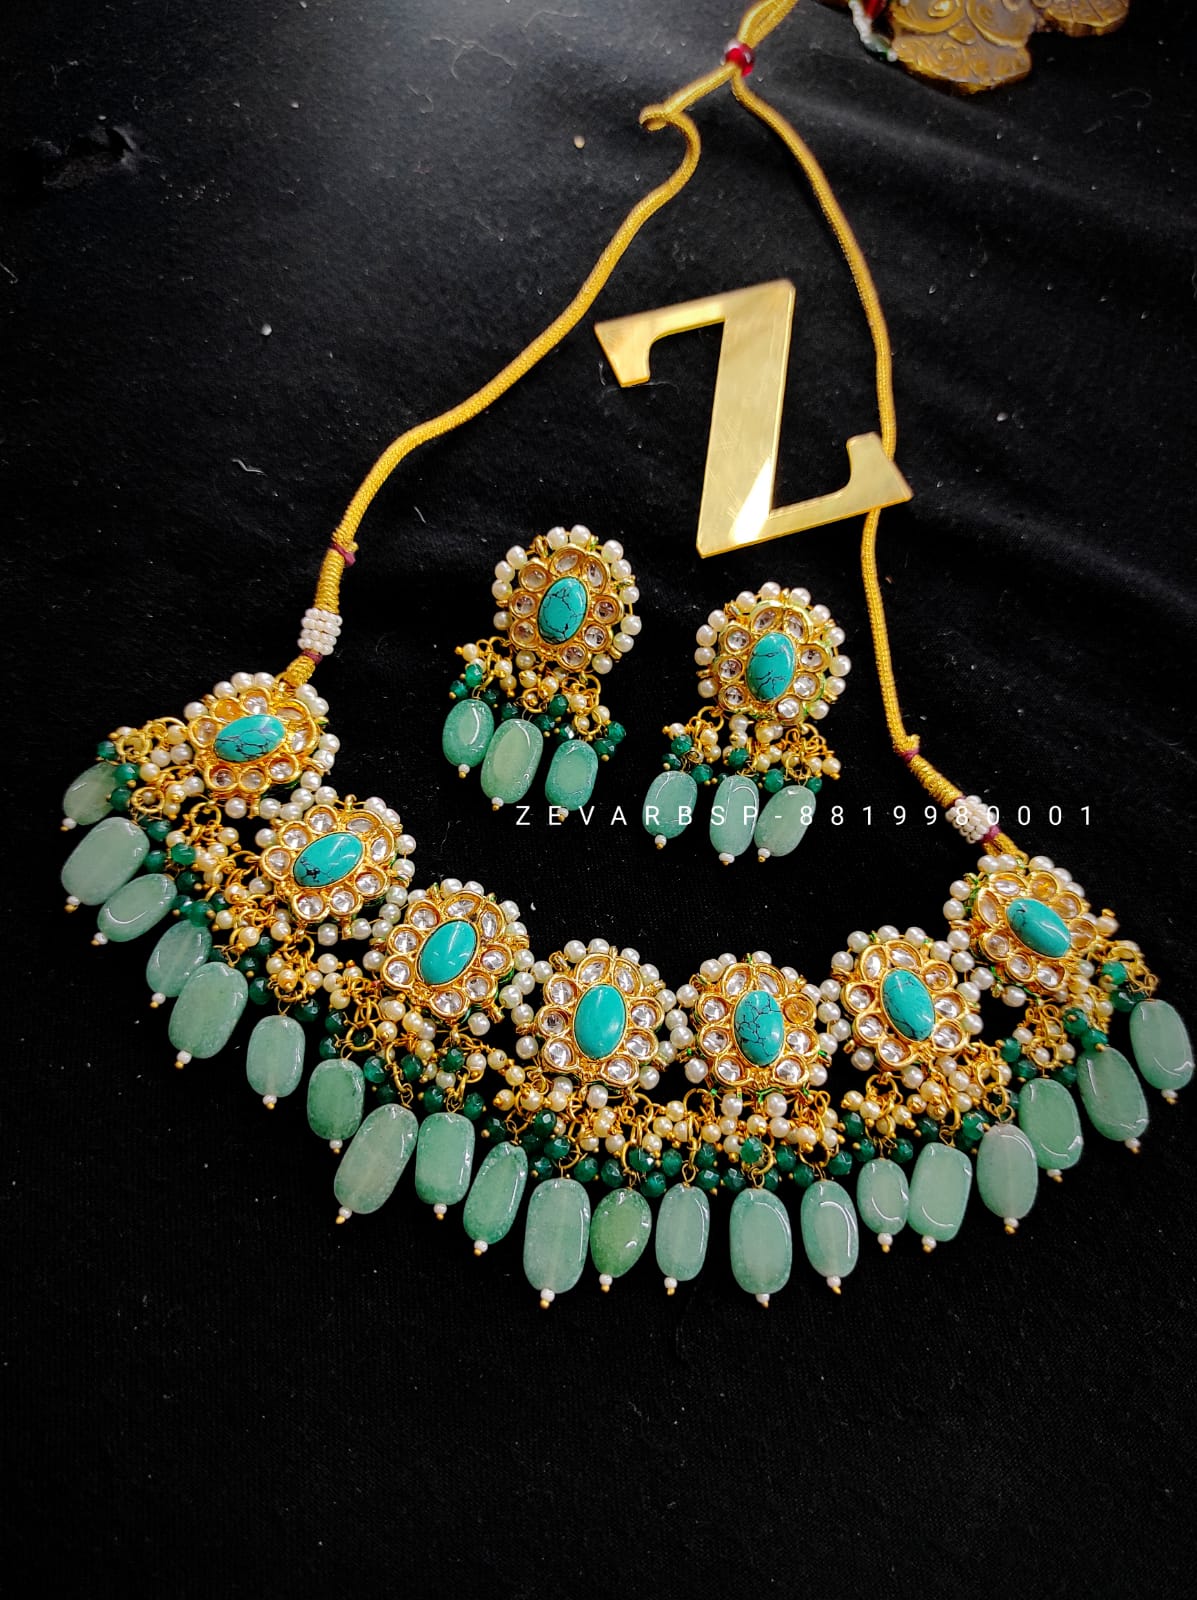 Zevar Jewelry Premium Quality Kundan Choker Necklace Earrings set By Zevar